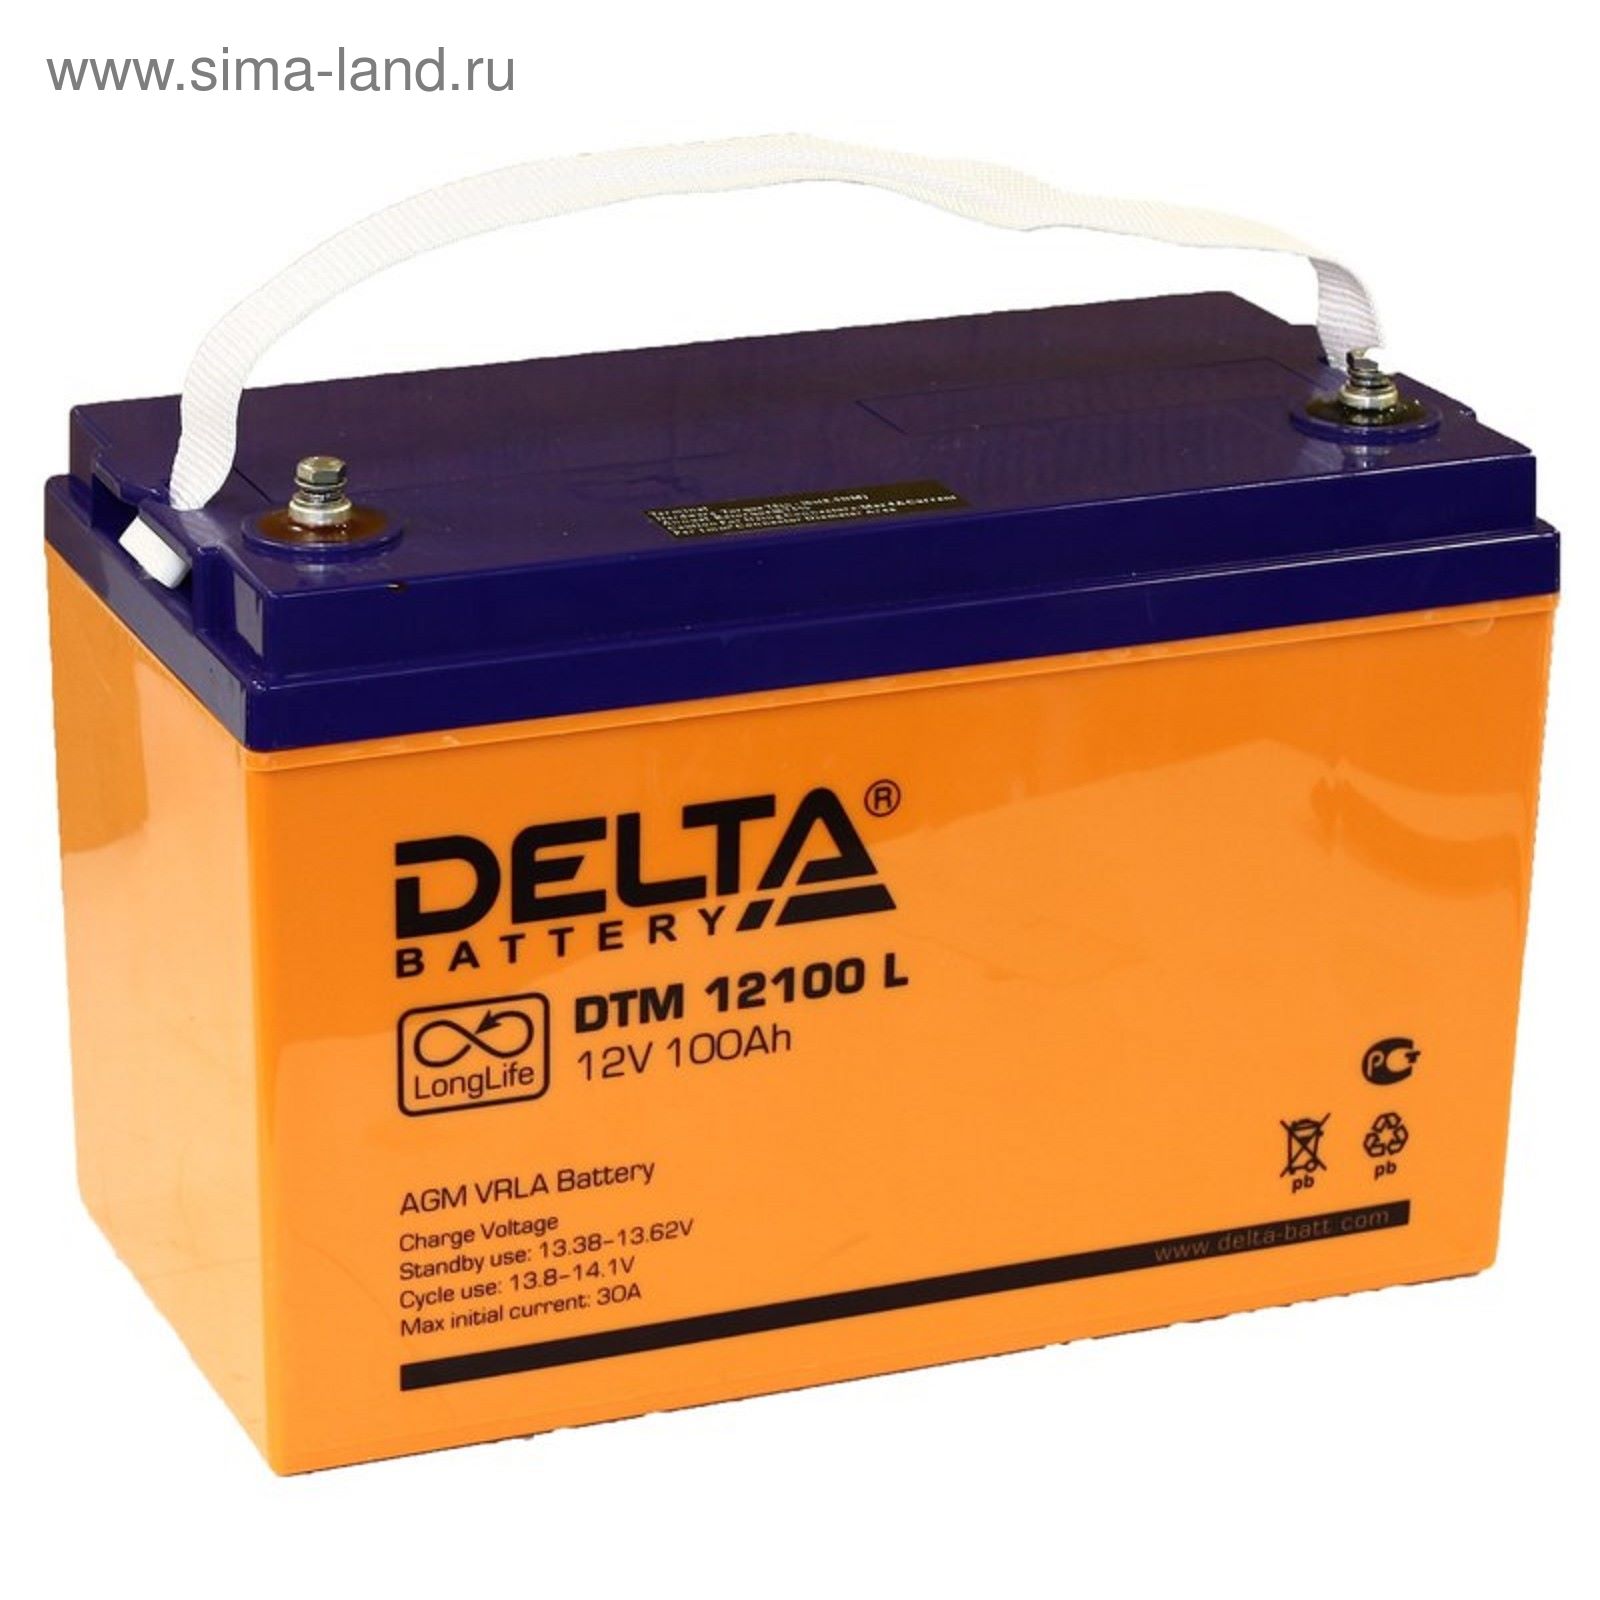 Аккумулятор для машины 12 вольт. Delta Battery DTM 12100 I 12в 100 а·ч. Аккумулятор Delta DTM 12100 L. Аккумуляторная батарея Дельта ДТМ. Аккумулятор Дельта 12в тяговый.